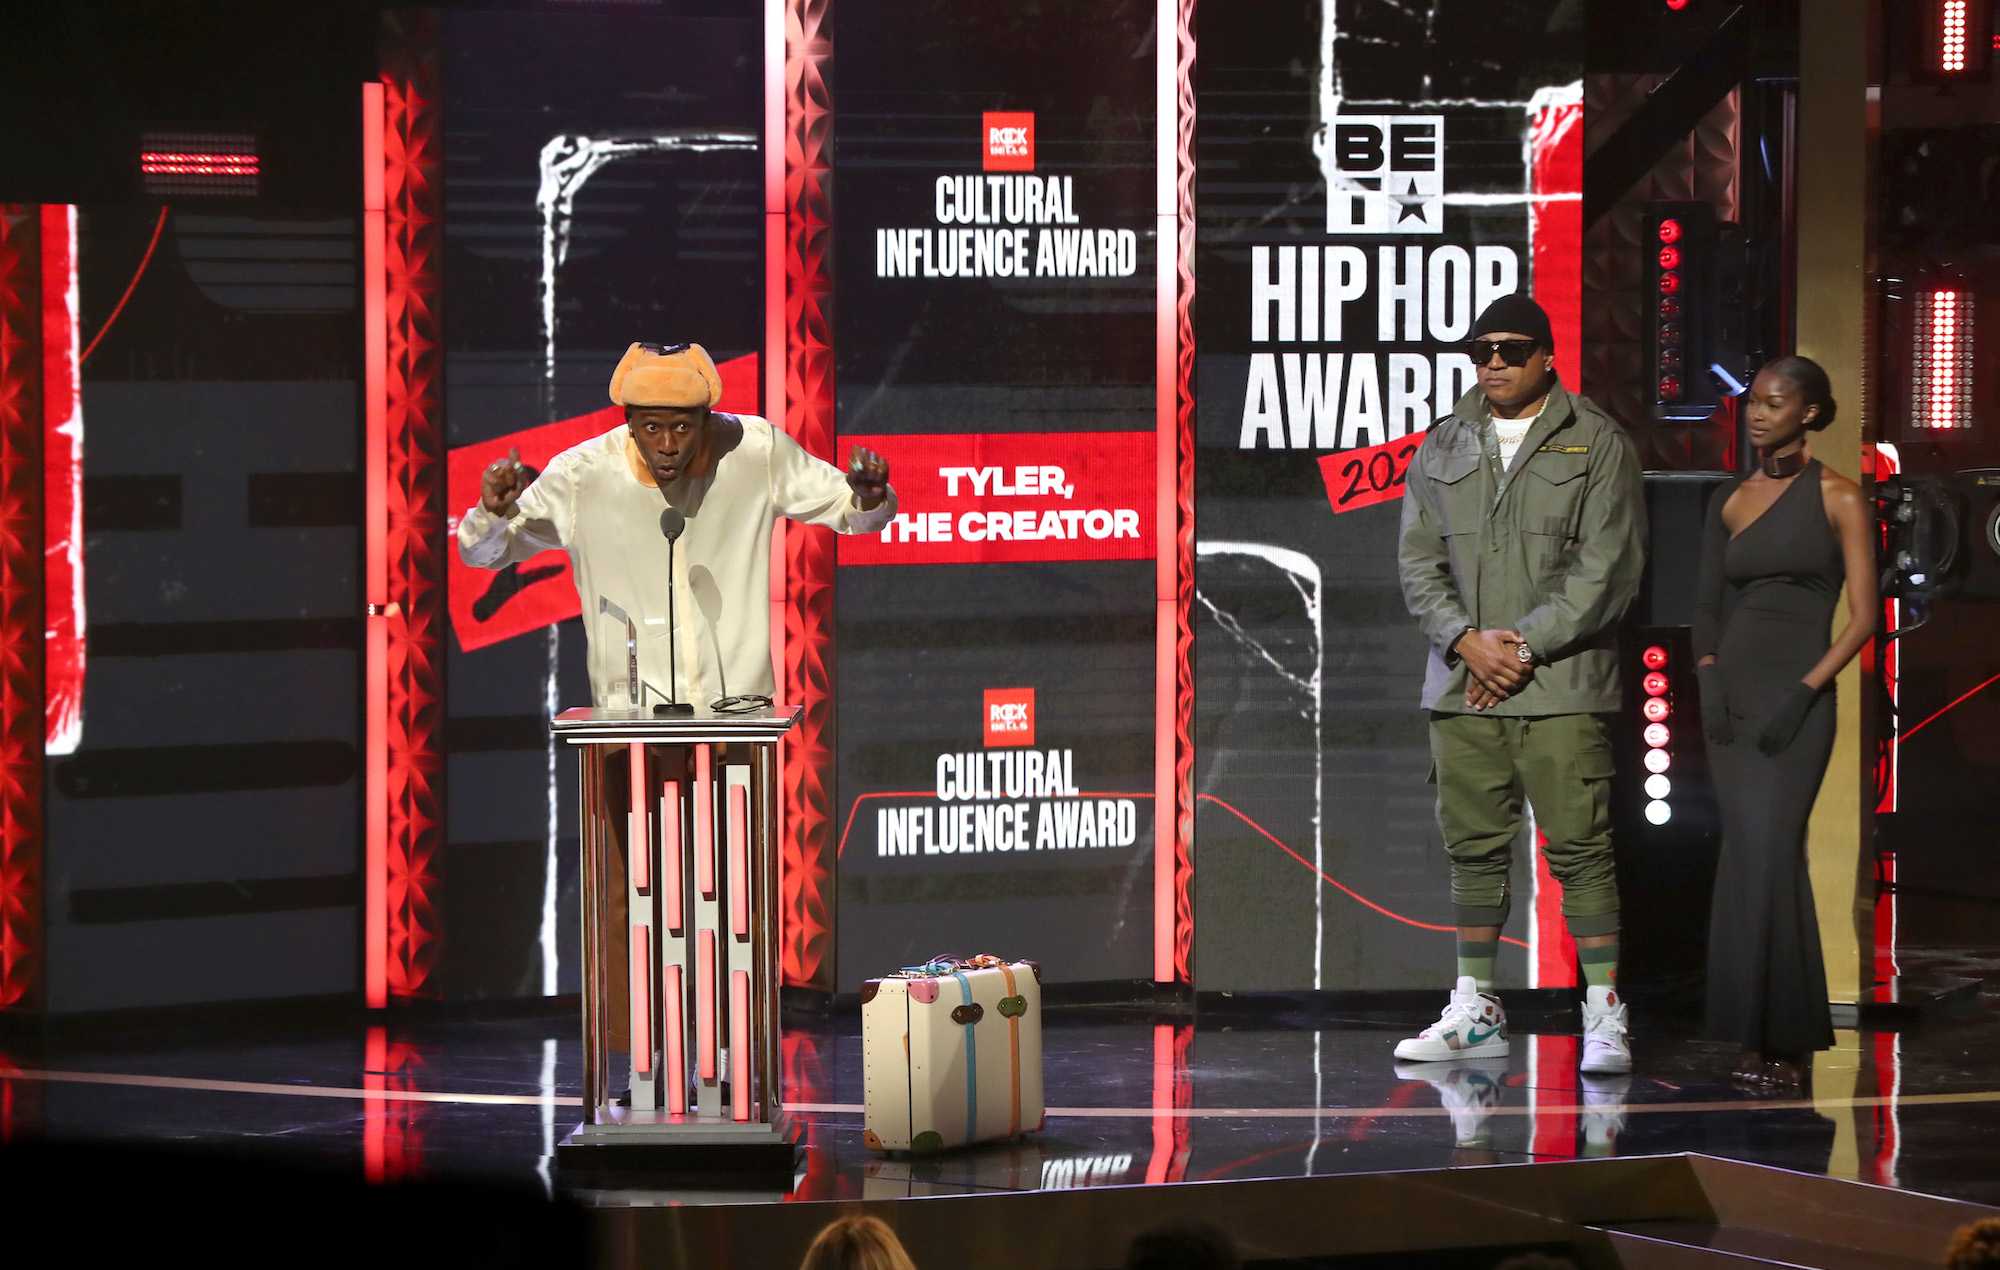 2017 bet hip hop awards - 2017 bet hip hop awards